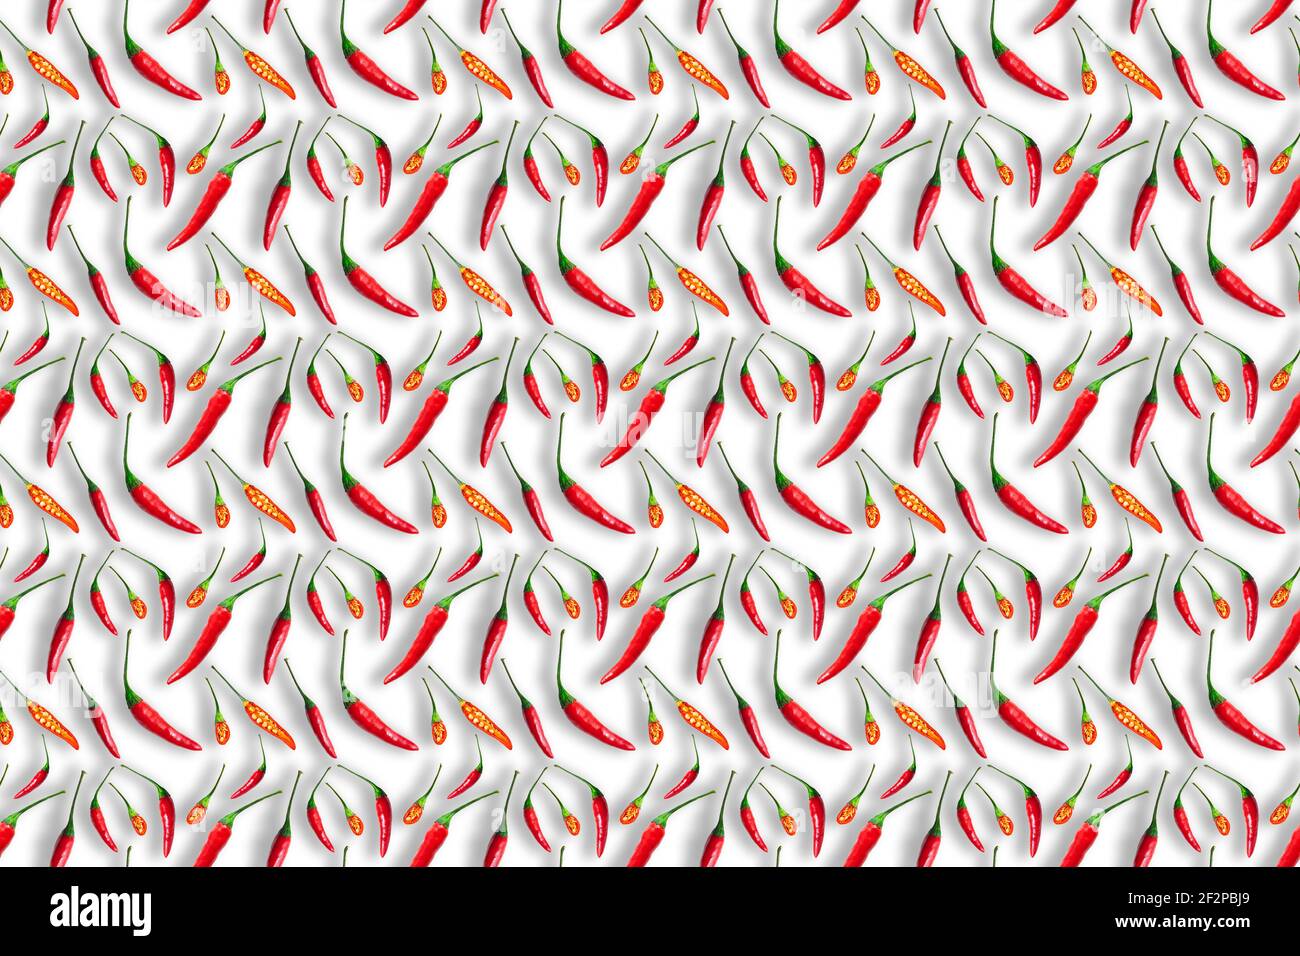 Kleine rote Chilischoten auf weißem Hintergrund isoliert. Nahtloses Muster Stockfoto